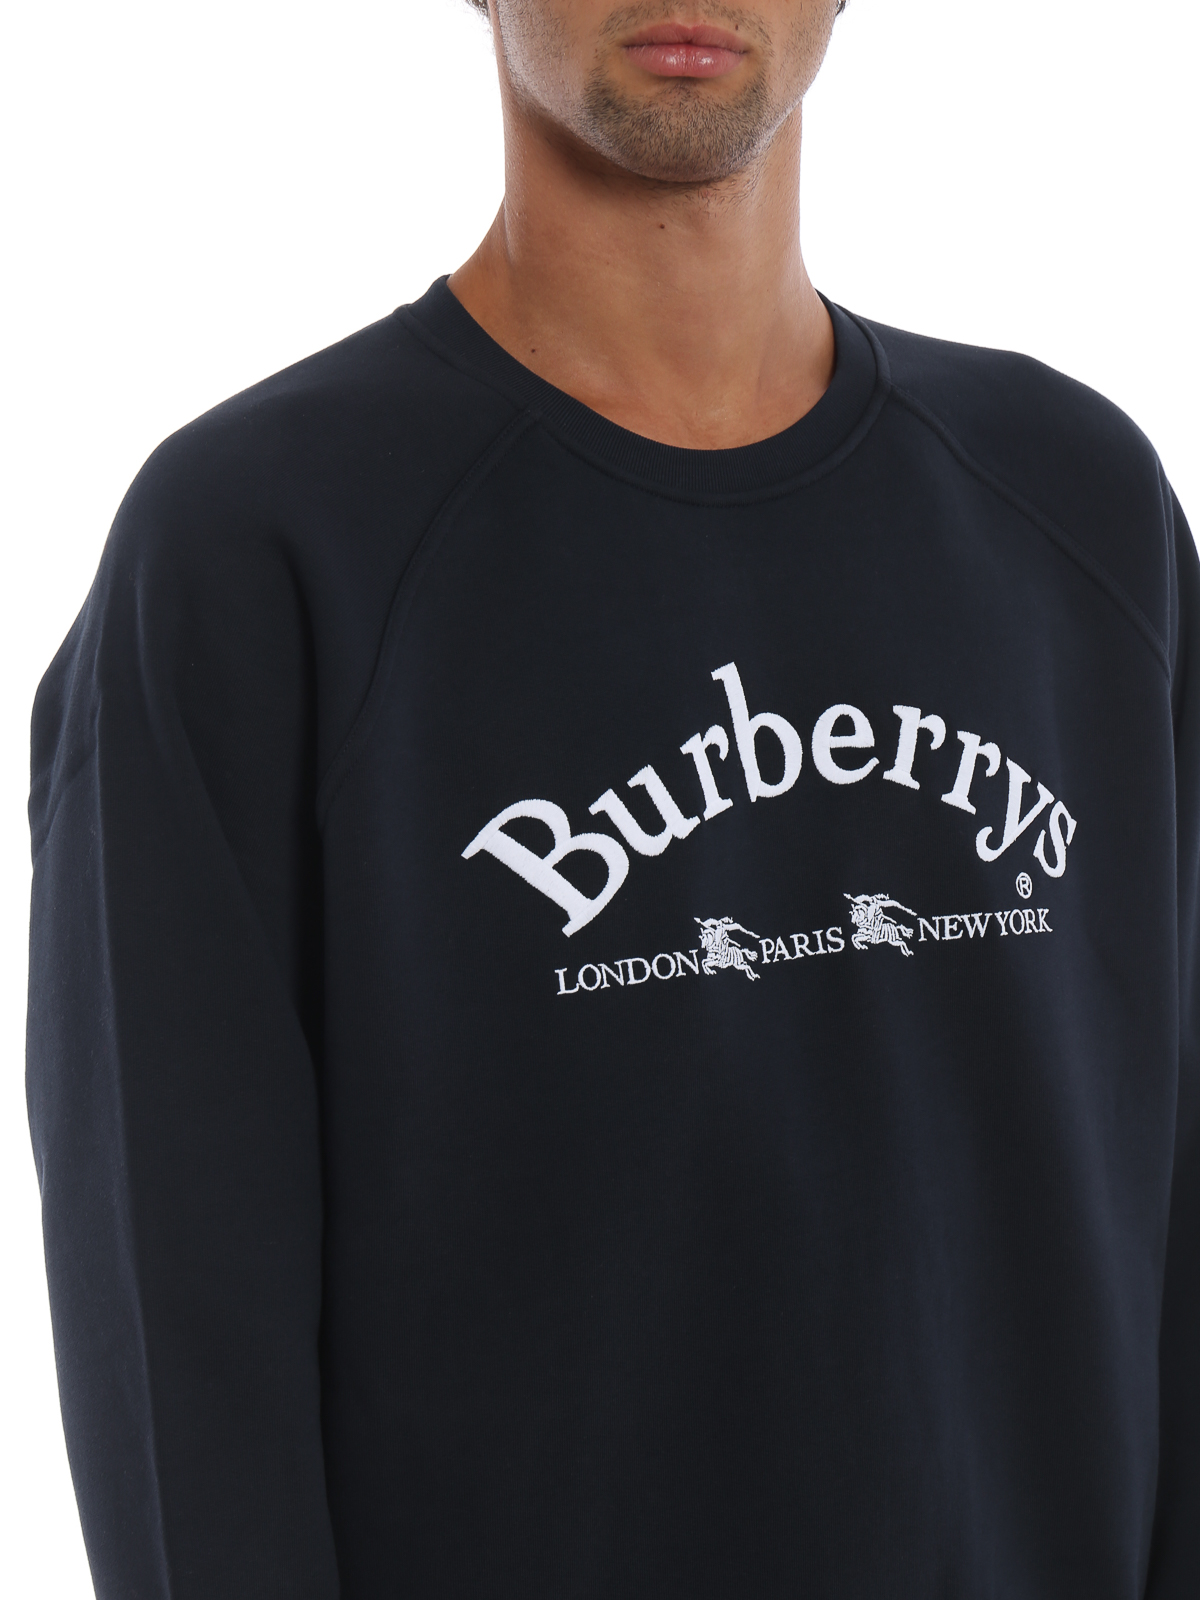 Toneelschrijver Overeenkomstig met Iedereen Sweatshirts & Sweaters Burberry - Battarni Burberrys embroidery navy  sweatshirt - 8003016